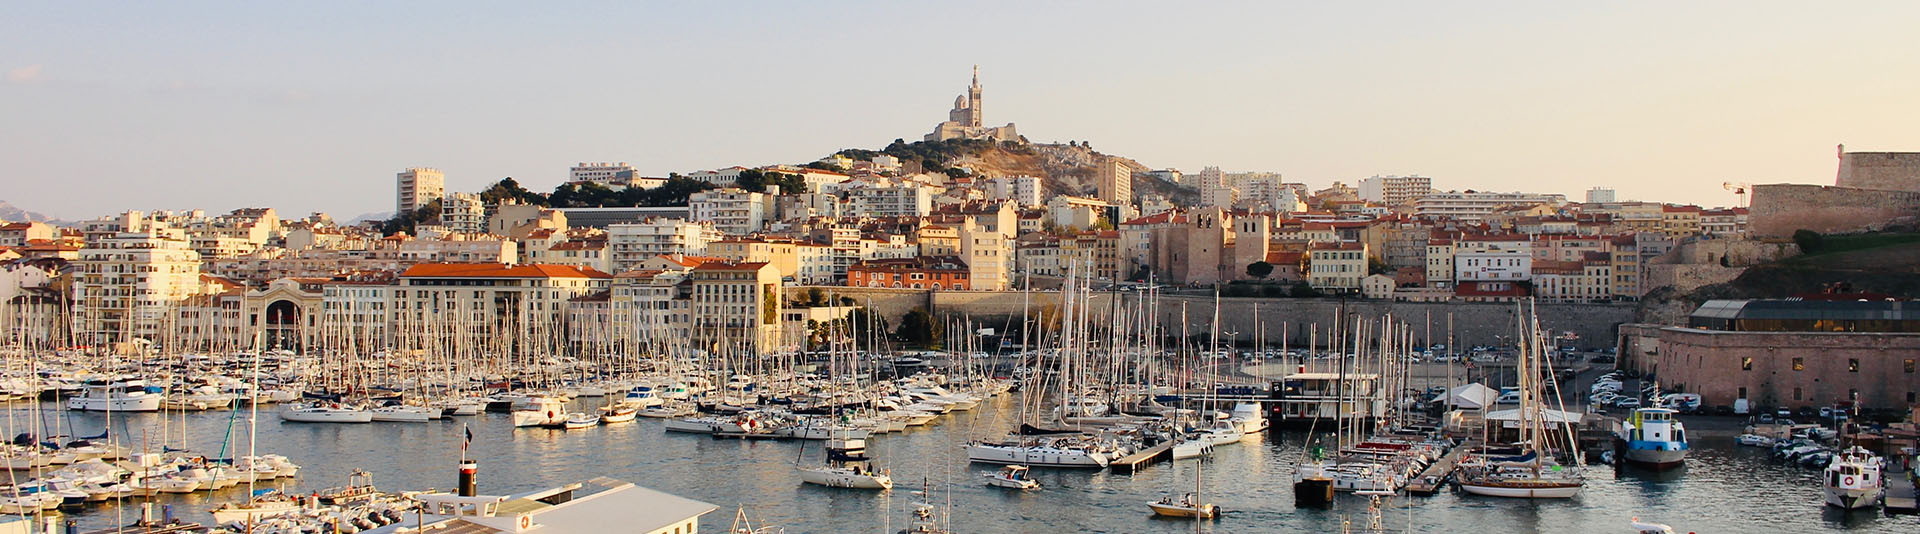 L’économie sociale et solidaire, un secteur en croissance à Marseille